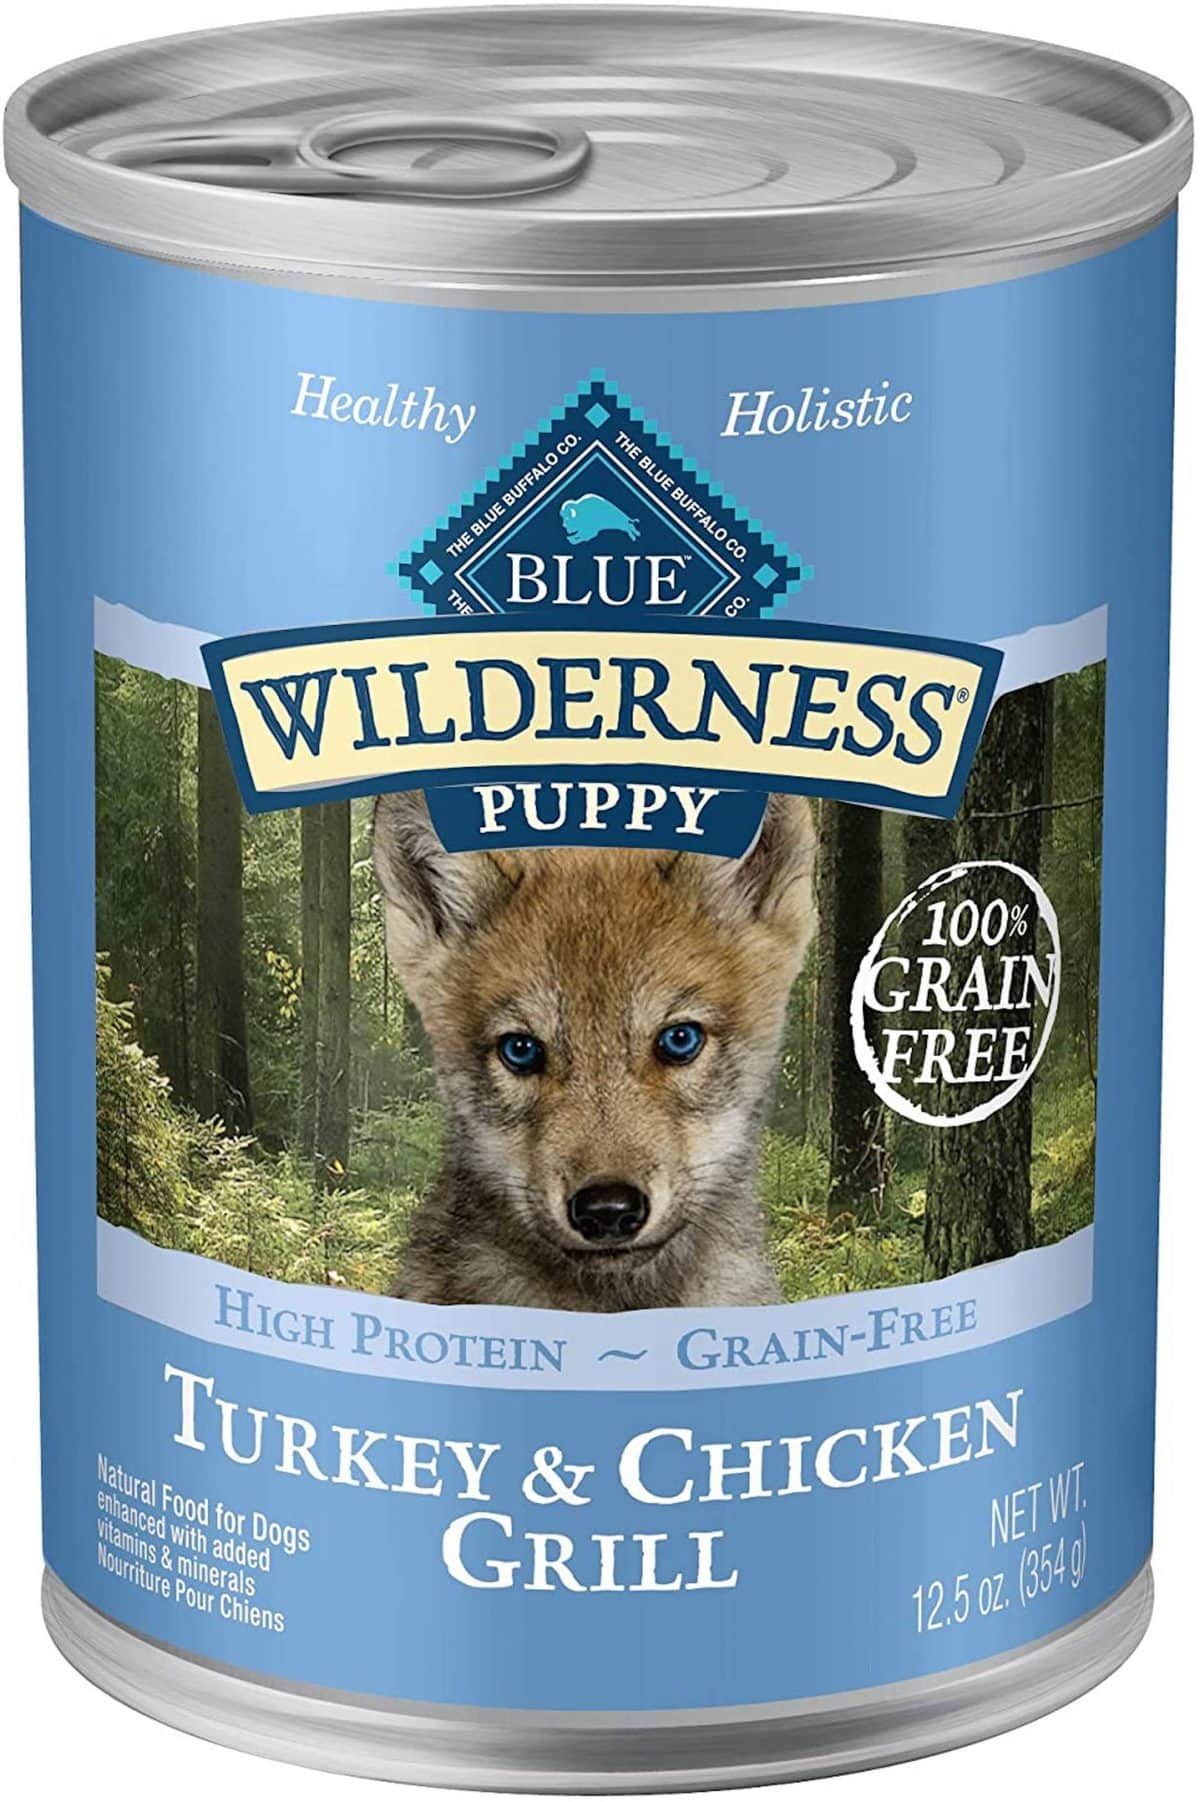 Blue Wilderness Turkey & Chicken Grill